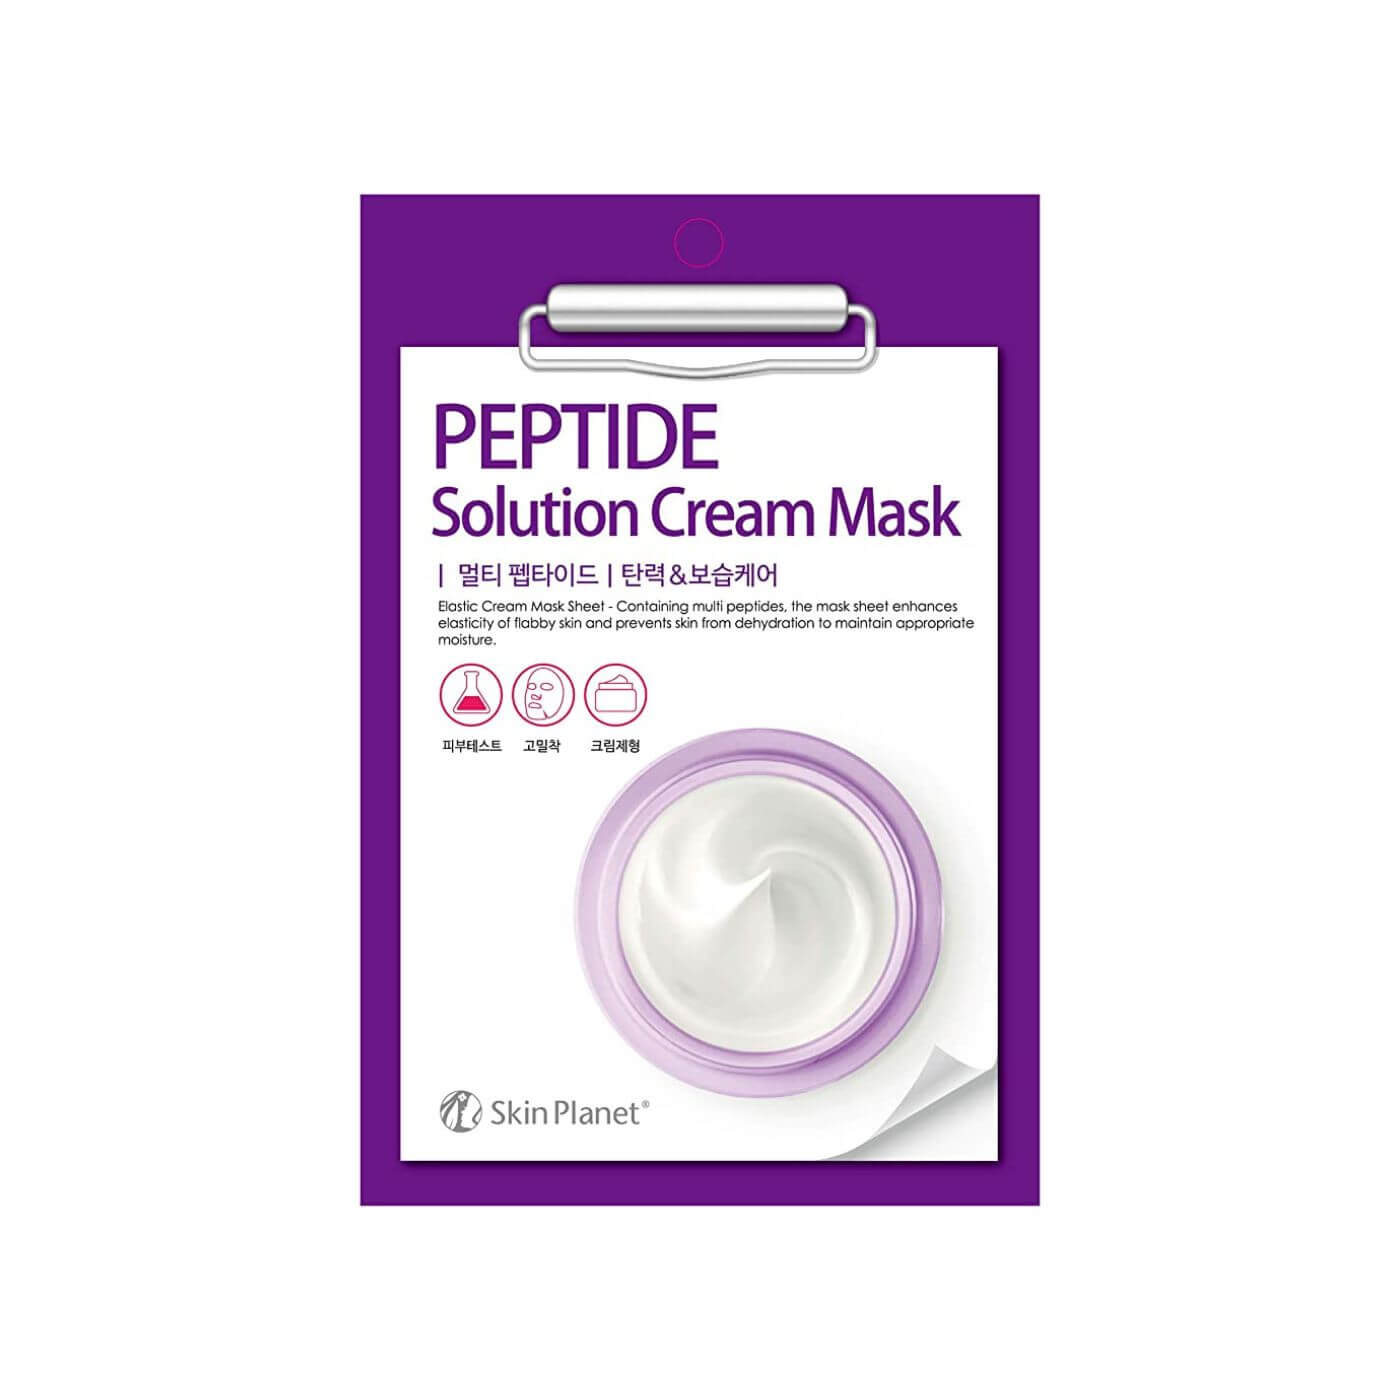 Prémiová krémová maska s peptidy a kolagenem pro lepší elasticitu pleti (1 ks, 30 g)